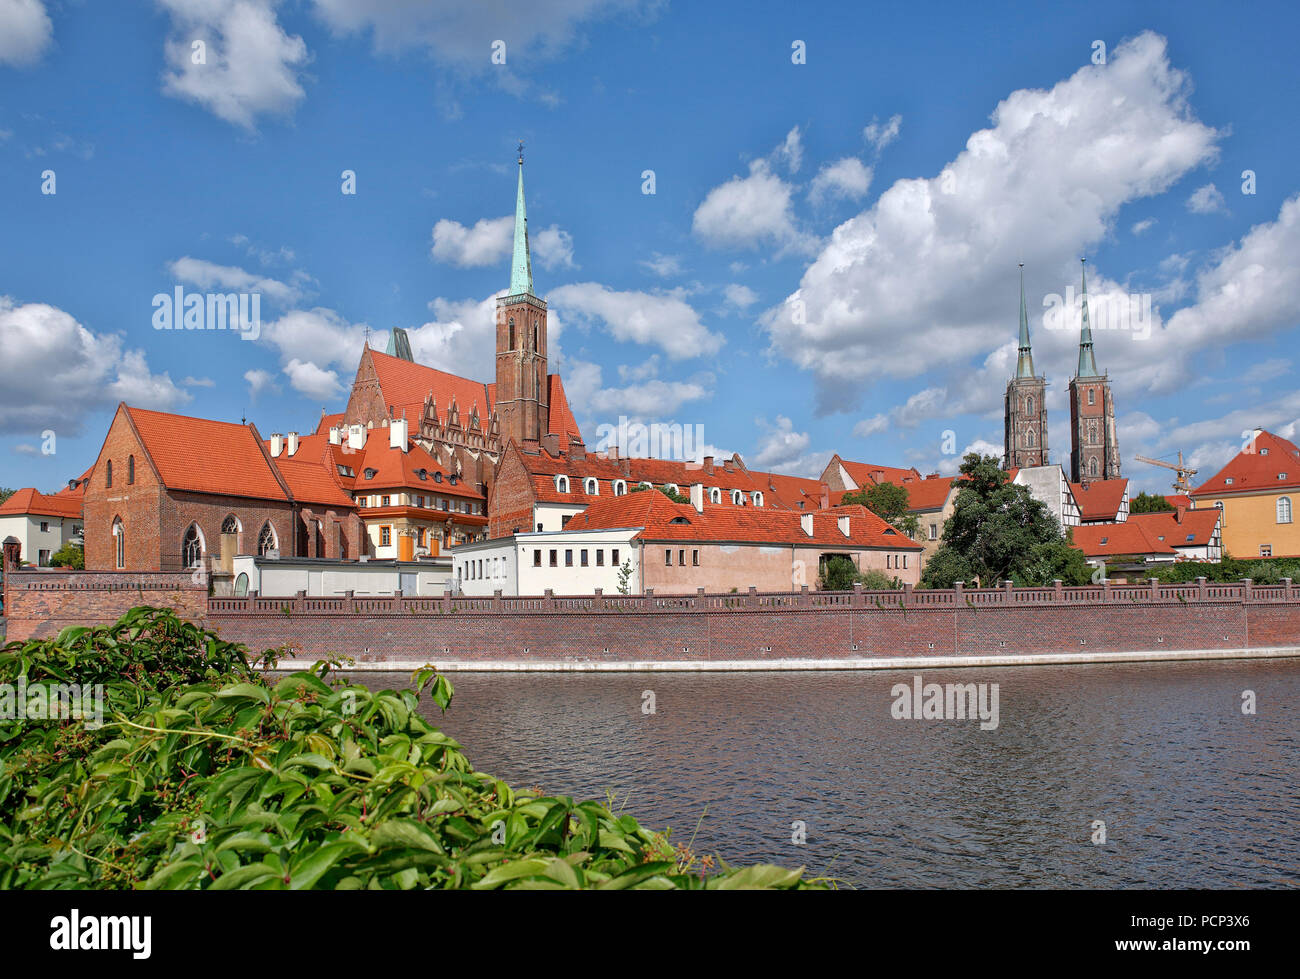 L'île de la cathédrale, dominsel Ostrow Tumski, partie la plus ancienne de la ville de Wroclaw, à proximité de la rivière Oder. Wroclaw, Breslau, Basse Silésie, Pologne, Europe Banque D'Images